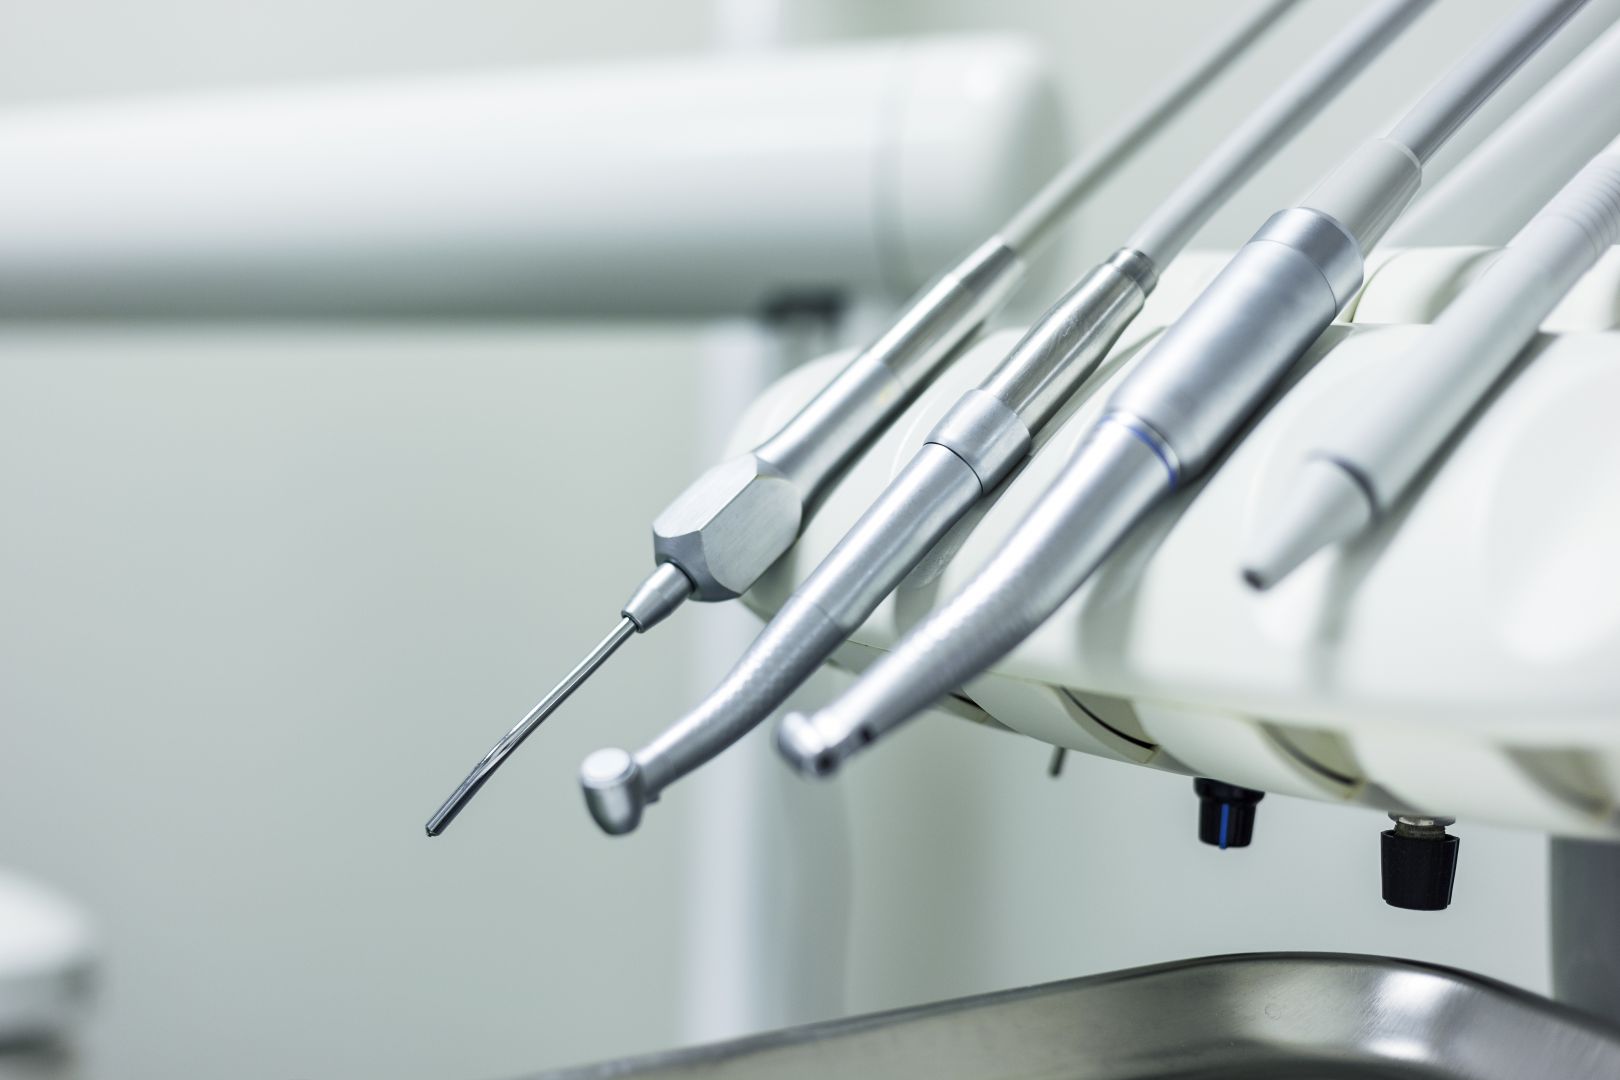 Zakázka na školení zaměstnanců pro oblast speciální stomatologie (Stomatologická zařízení) - Ústí nad Labem